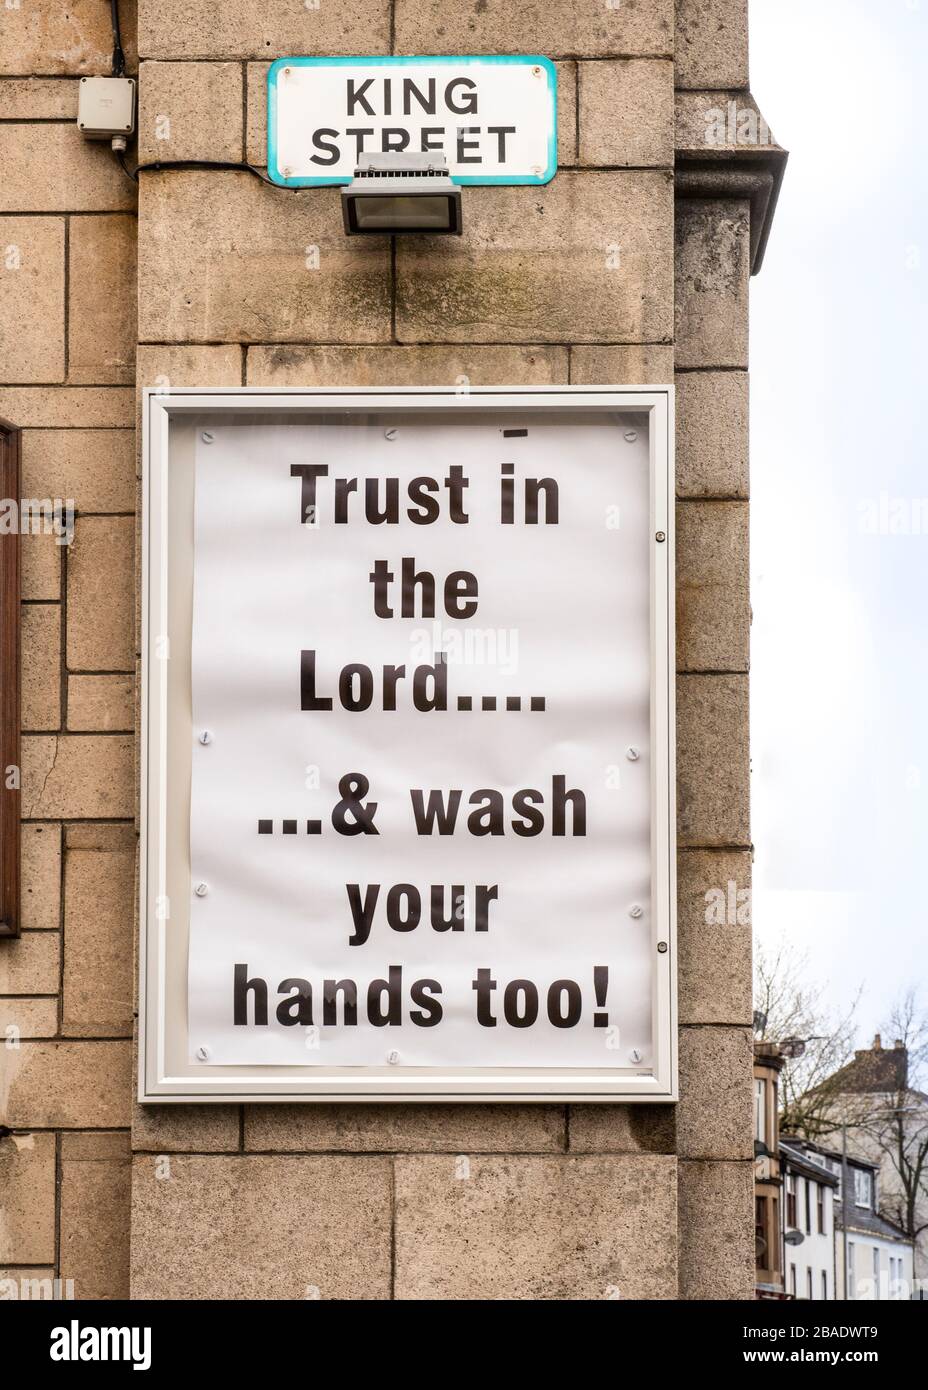 Wayside Puilpit an der Außenseite der Kirchenmauer - liest - Vertrauen in den Herrn ...& waschen Sie auch Ihre Hände! Stockfoto